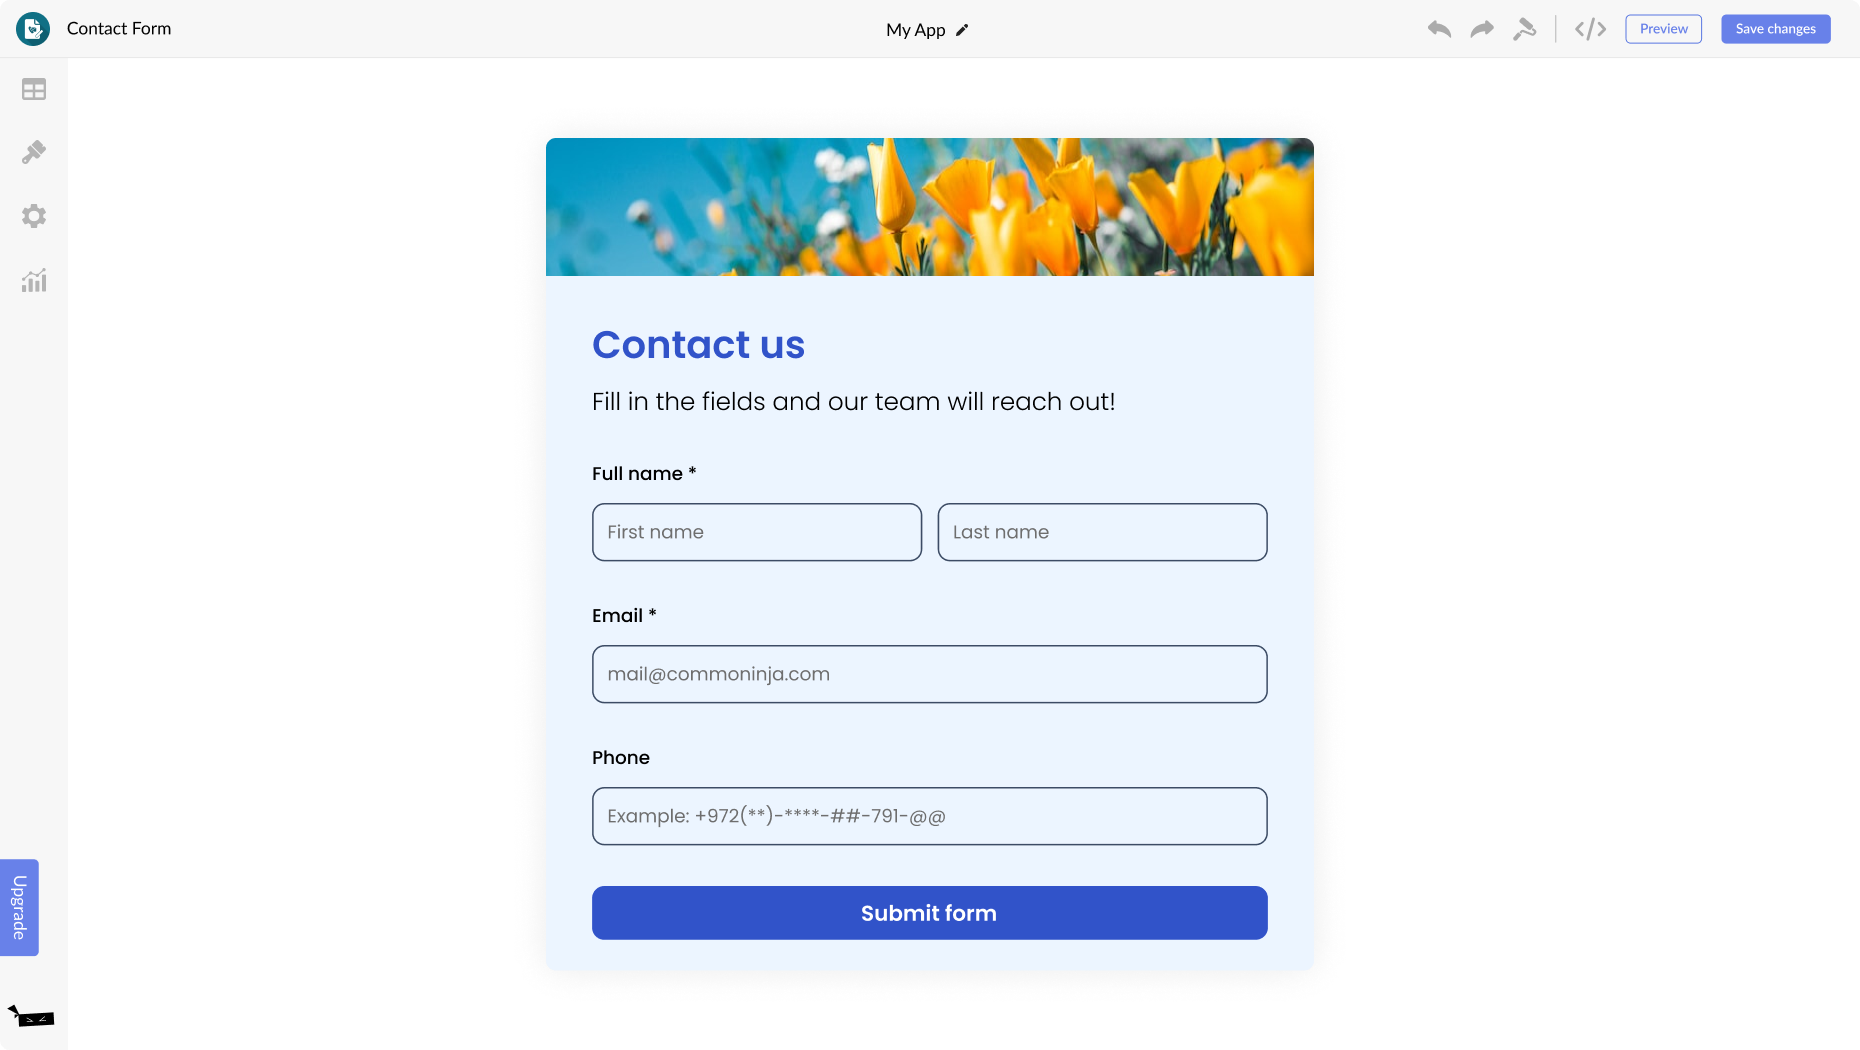 Contact Form for Portfoliobox